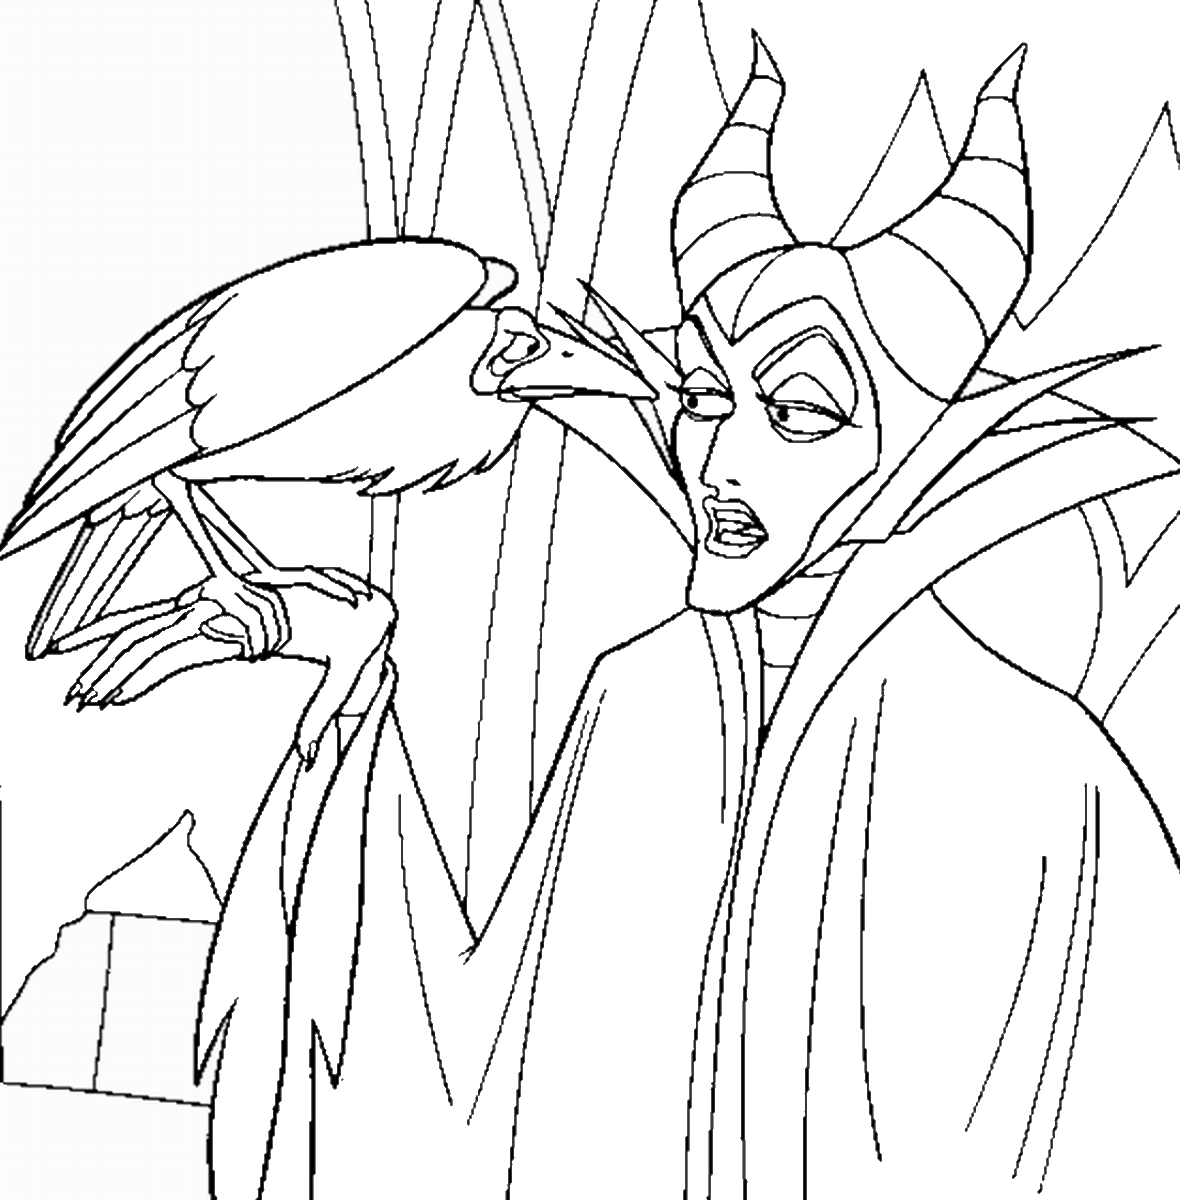 Maleficent_coloring1.gif (1180×1200) (mit Bildern